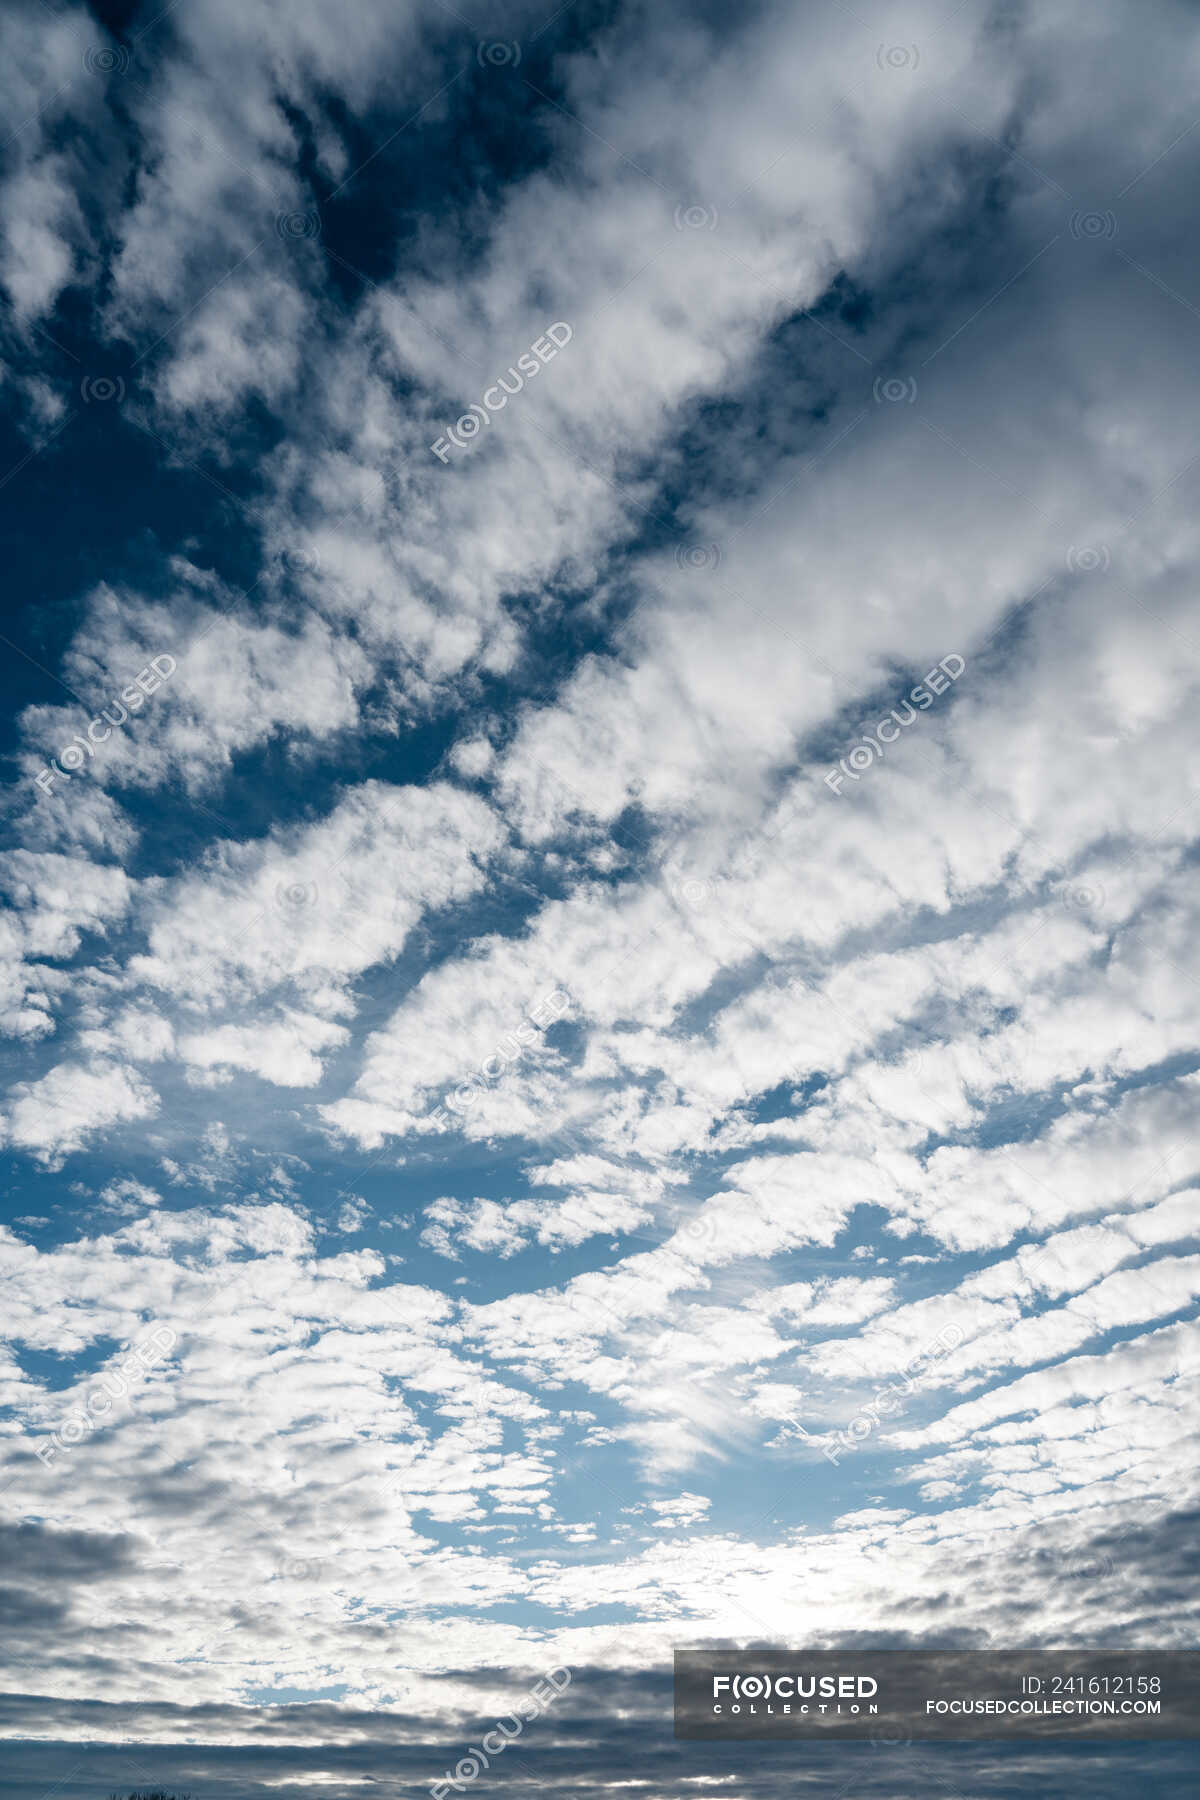 Рингтон взгляни на небо посмотри как плывут. Взгляни на небо посмотри как плывут облака. Облака белые плывут фото. Взгляни на небо посмотри как плывут облака картинки. Iphone 15 плавающее облако.